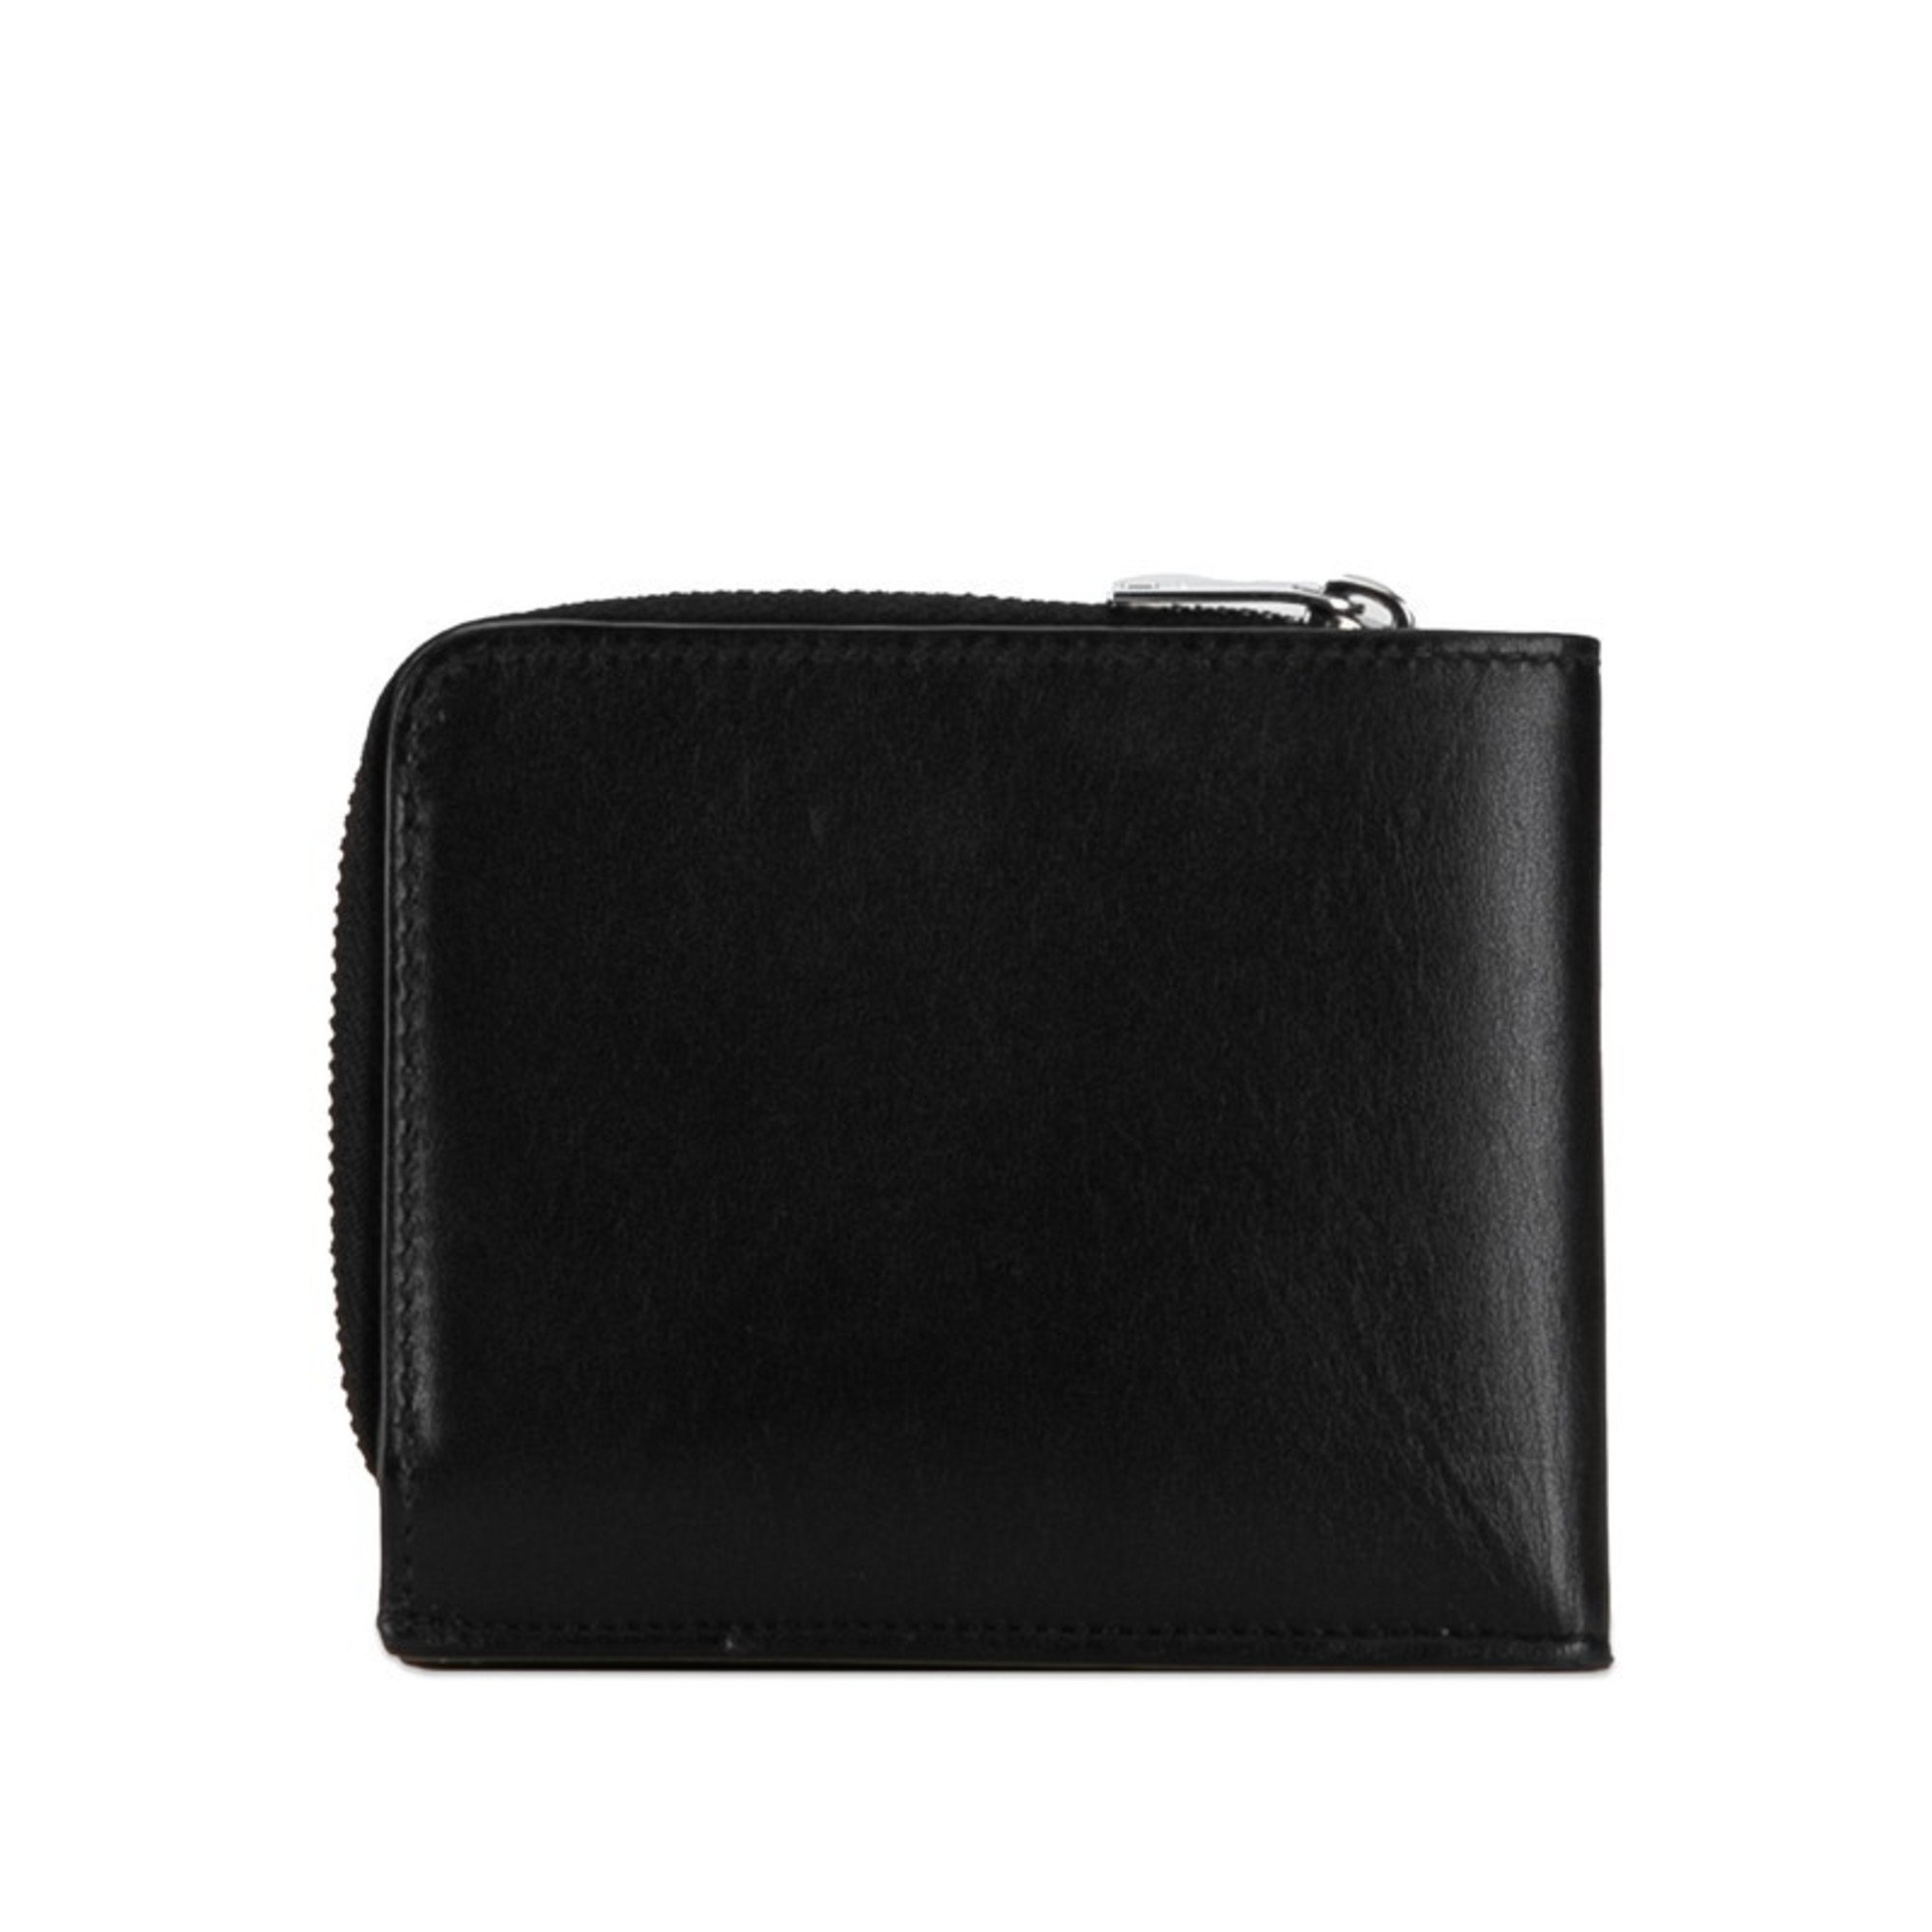 Saint Laurent East West Zip Wallet L-Shaped Bi-Fold Compact 556268 Black Leather Men's SAINT LAURENT